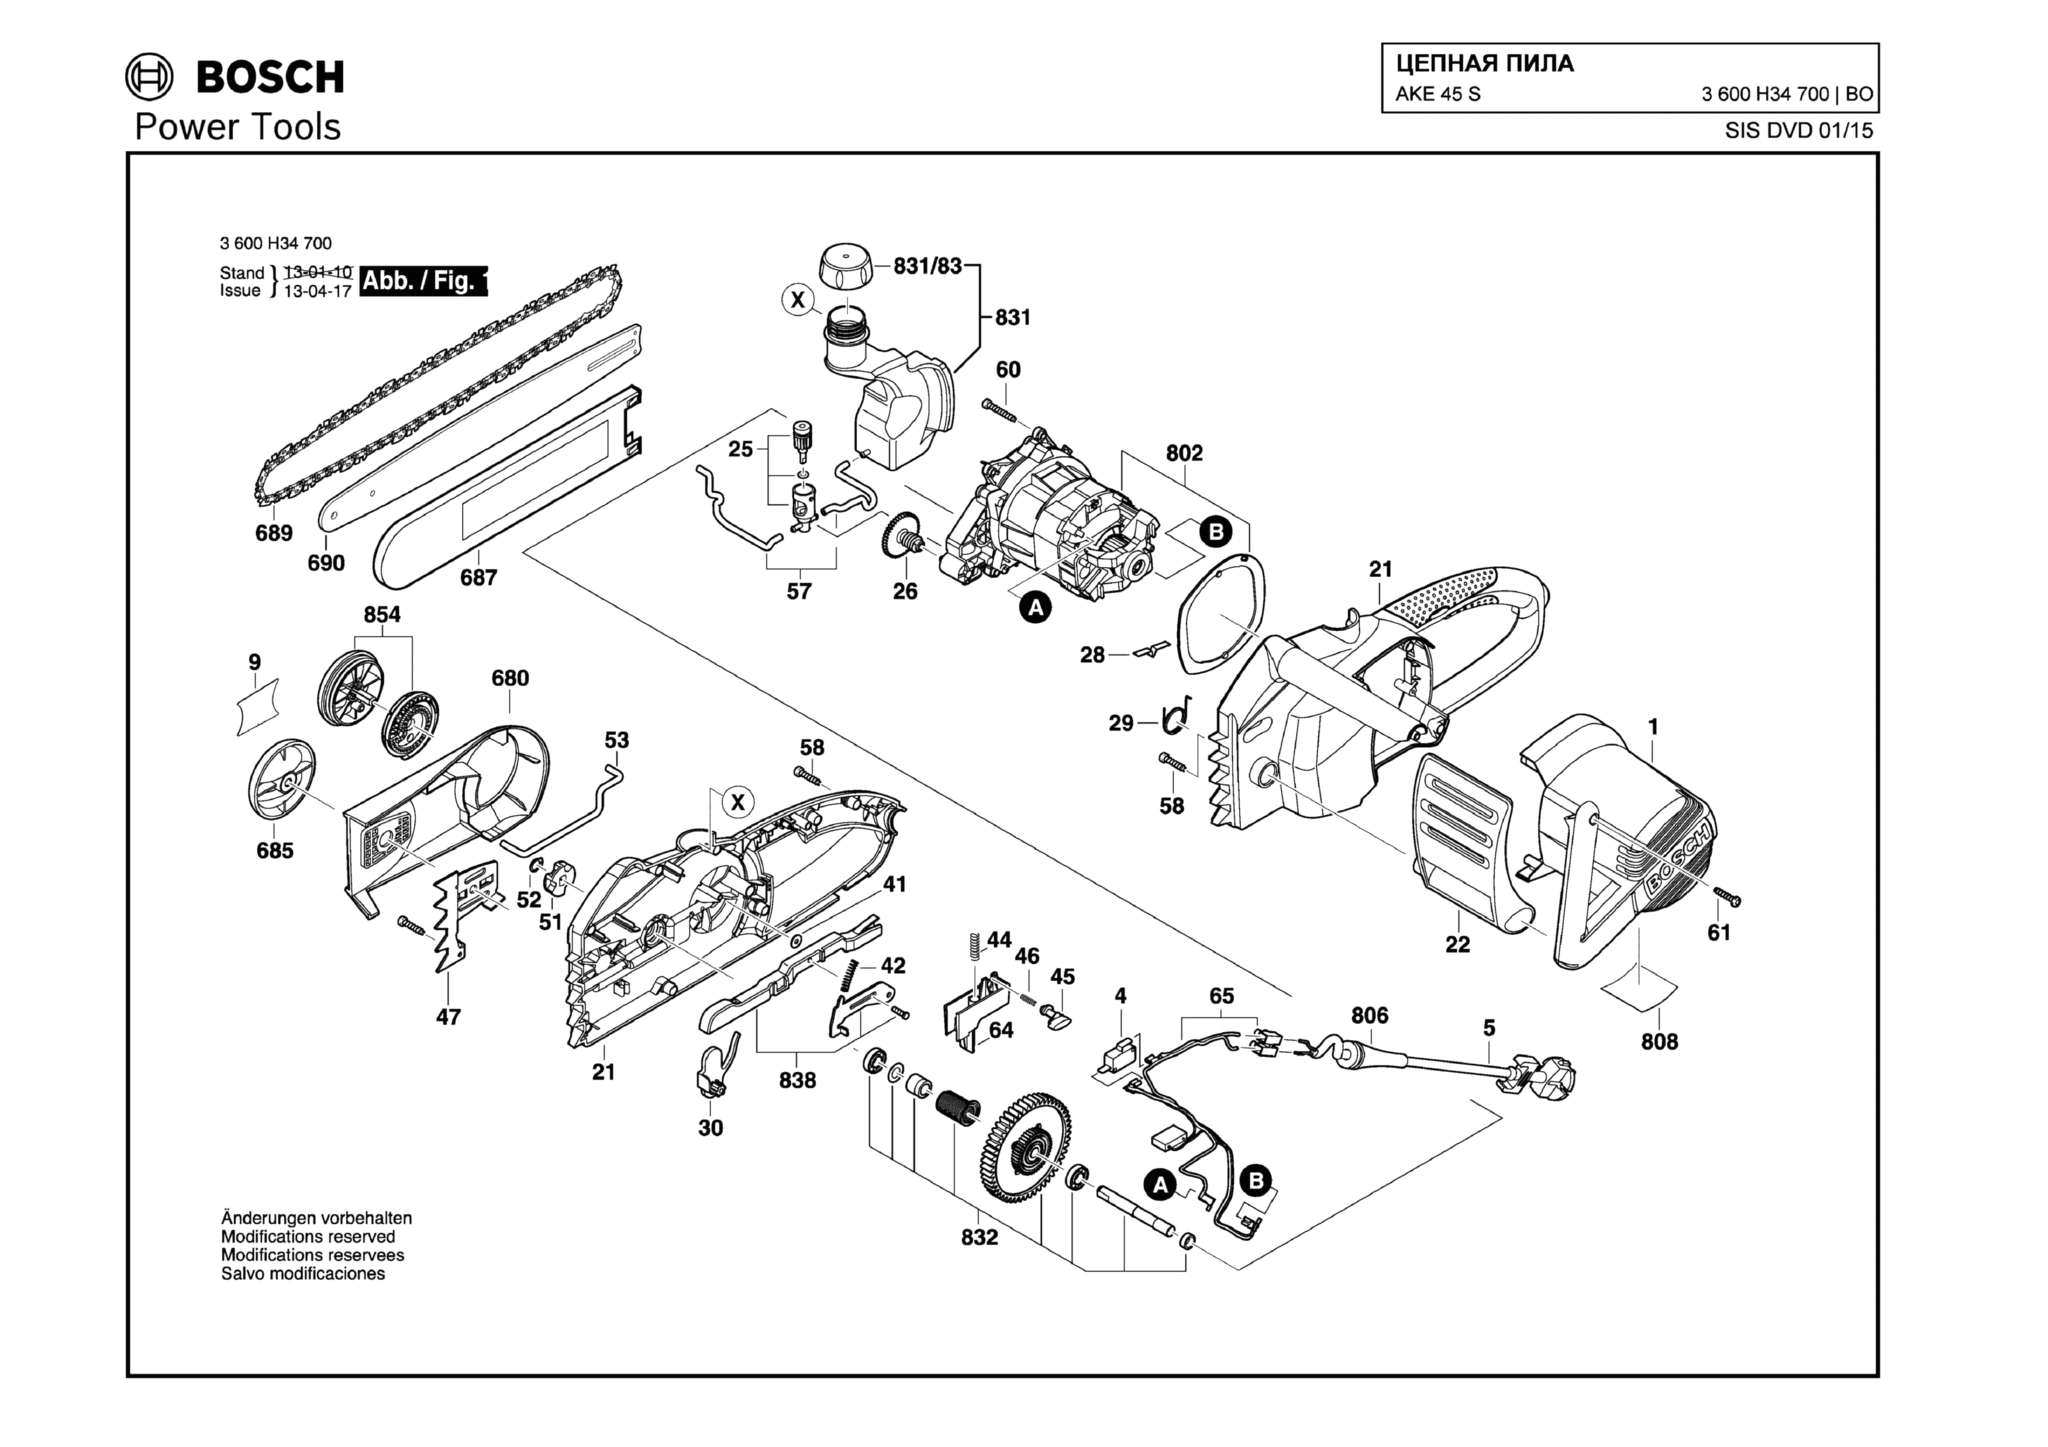 Запчасти, схема и деталировка Bosch AKE 45 S (ТИП 3600H34700)